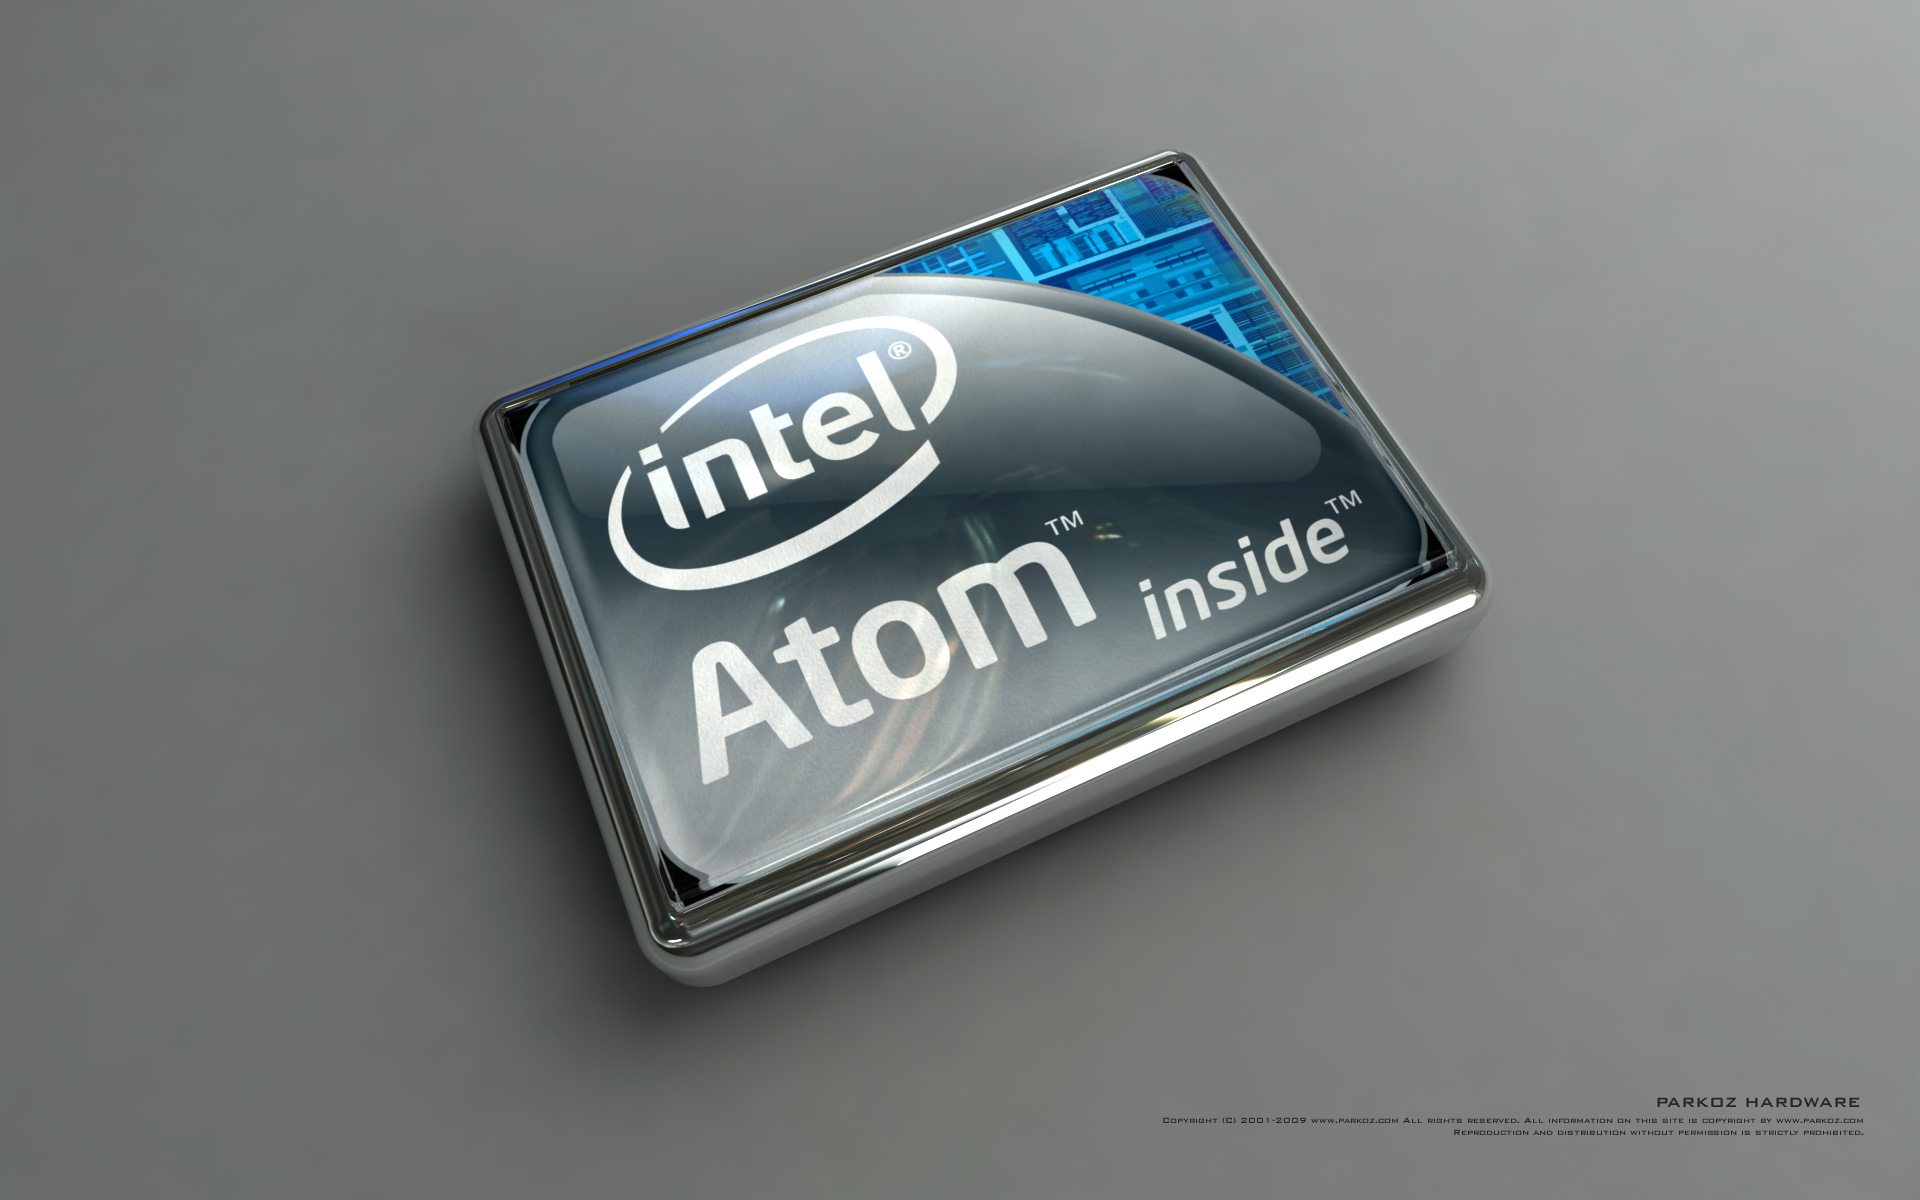 Intel Atom Wallpaper On